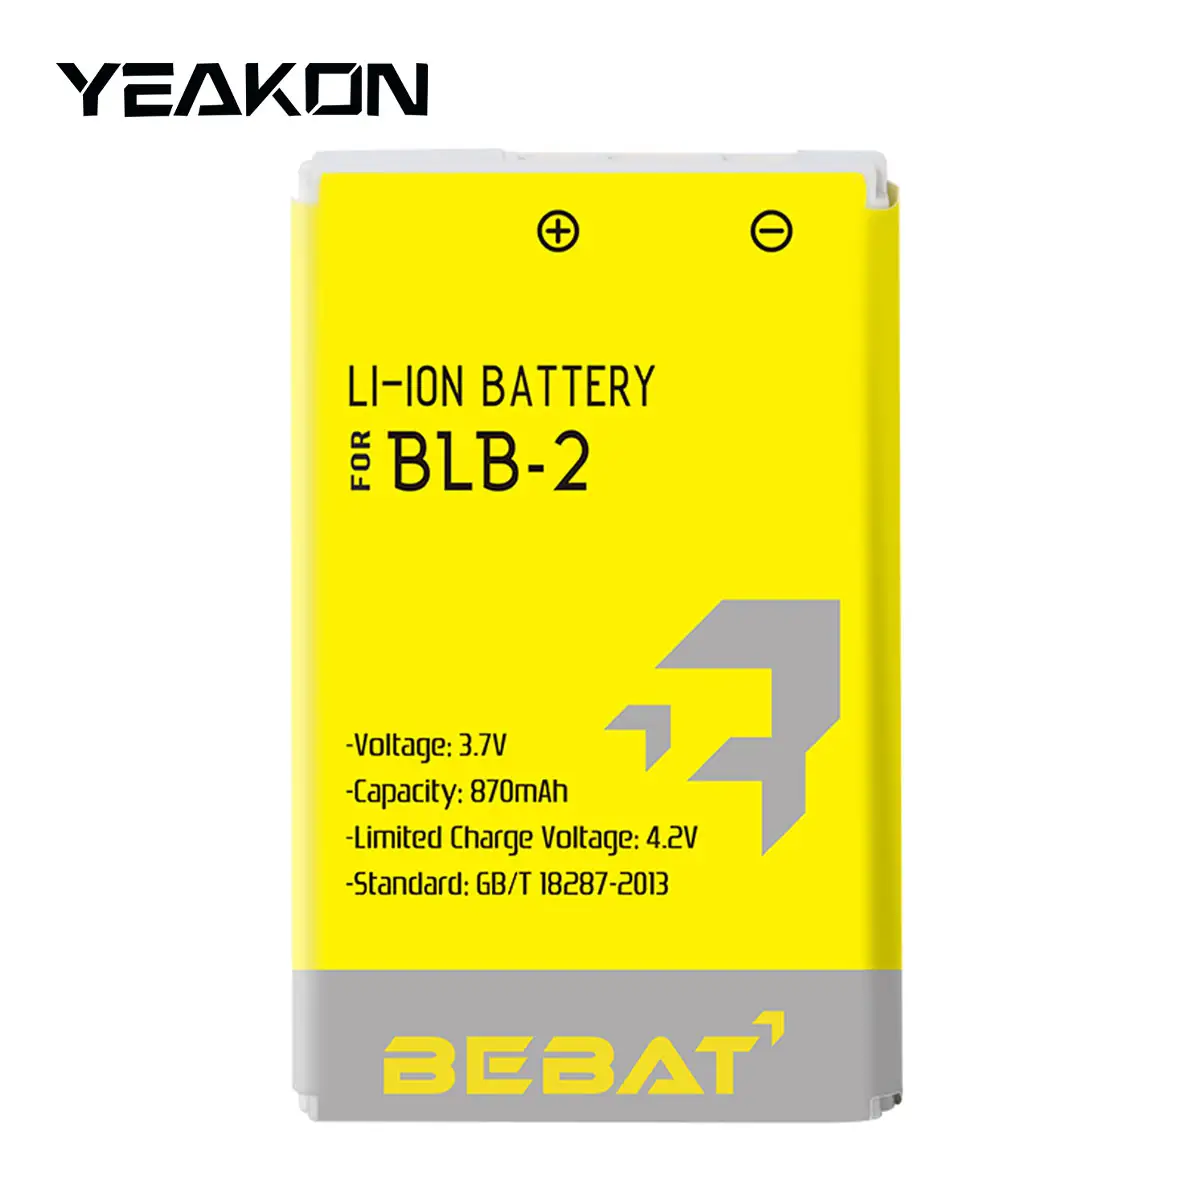 Atacado de alta qualidade do telefone móvel bateria digital BLB-2 para Nokia 8210 8250 8850 8910 8310 3.7V 870mAh Batterie